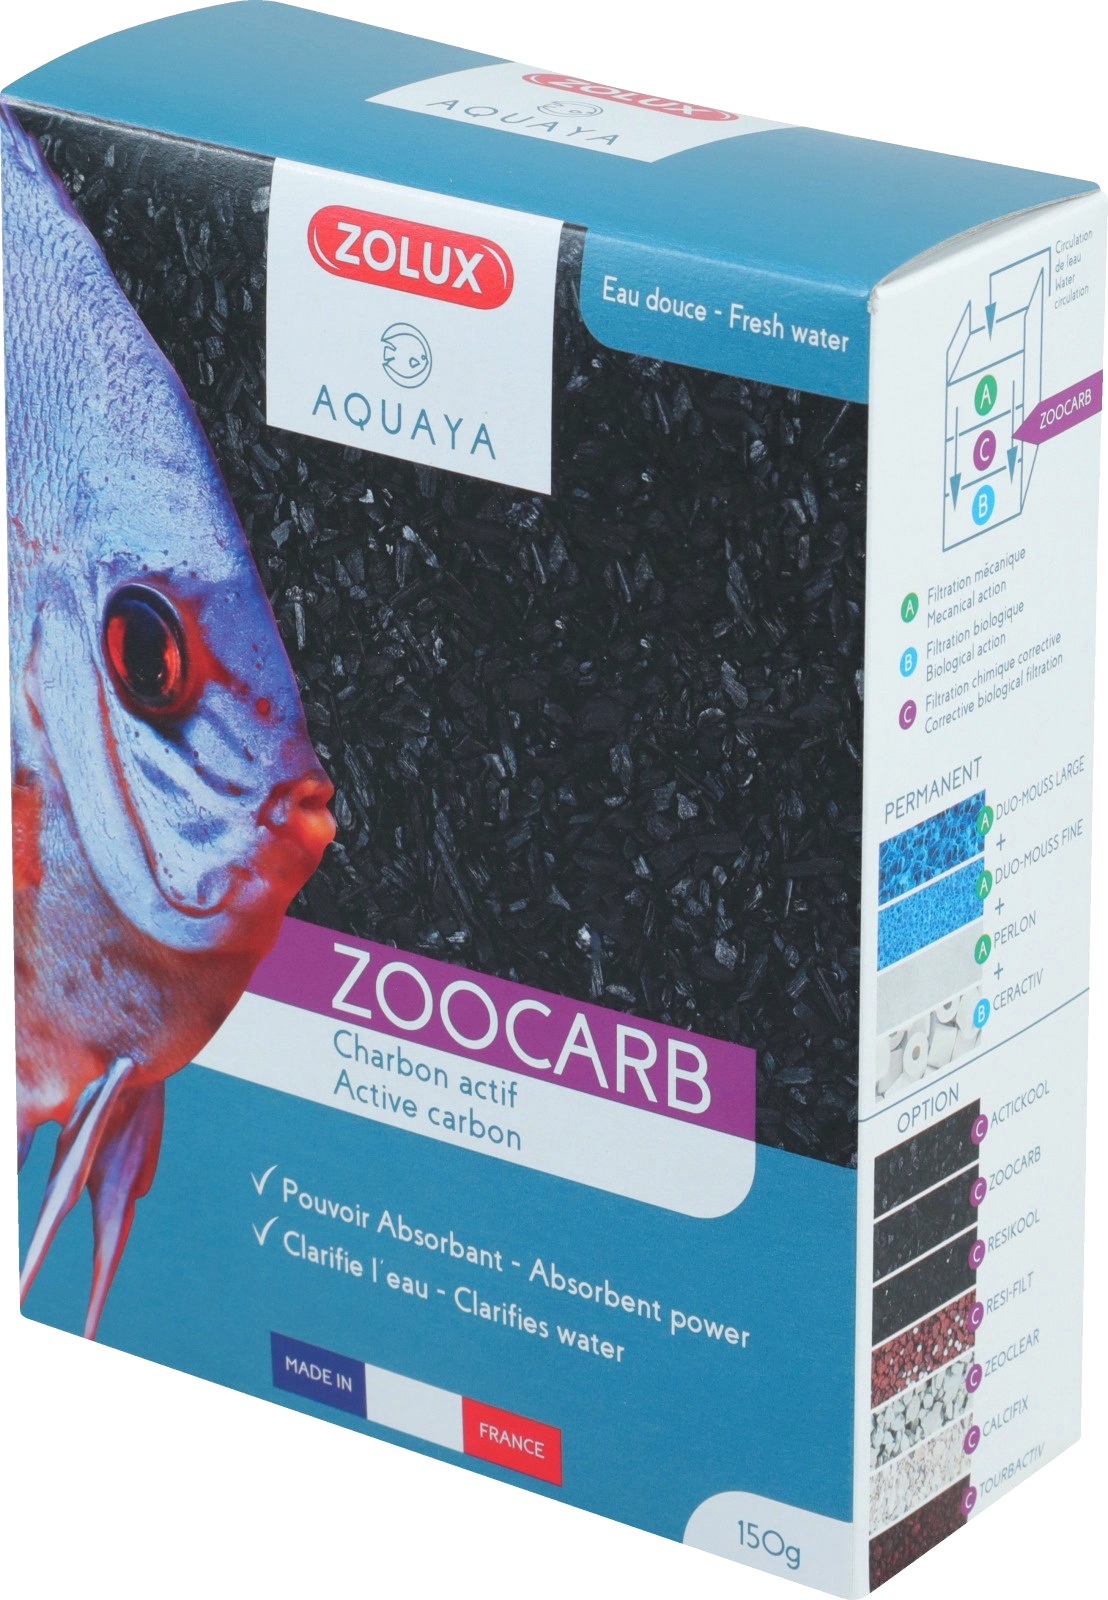 Charbon actif Zoocarb épuration de l'eau de l'aquarium 600 ml